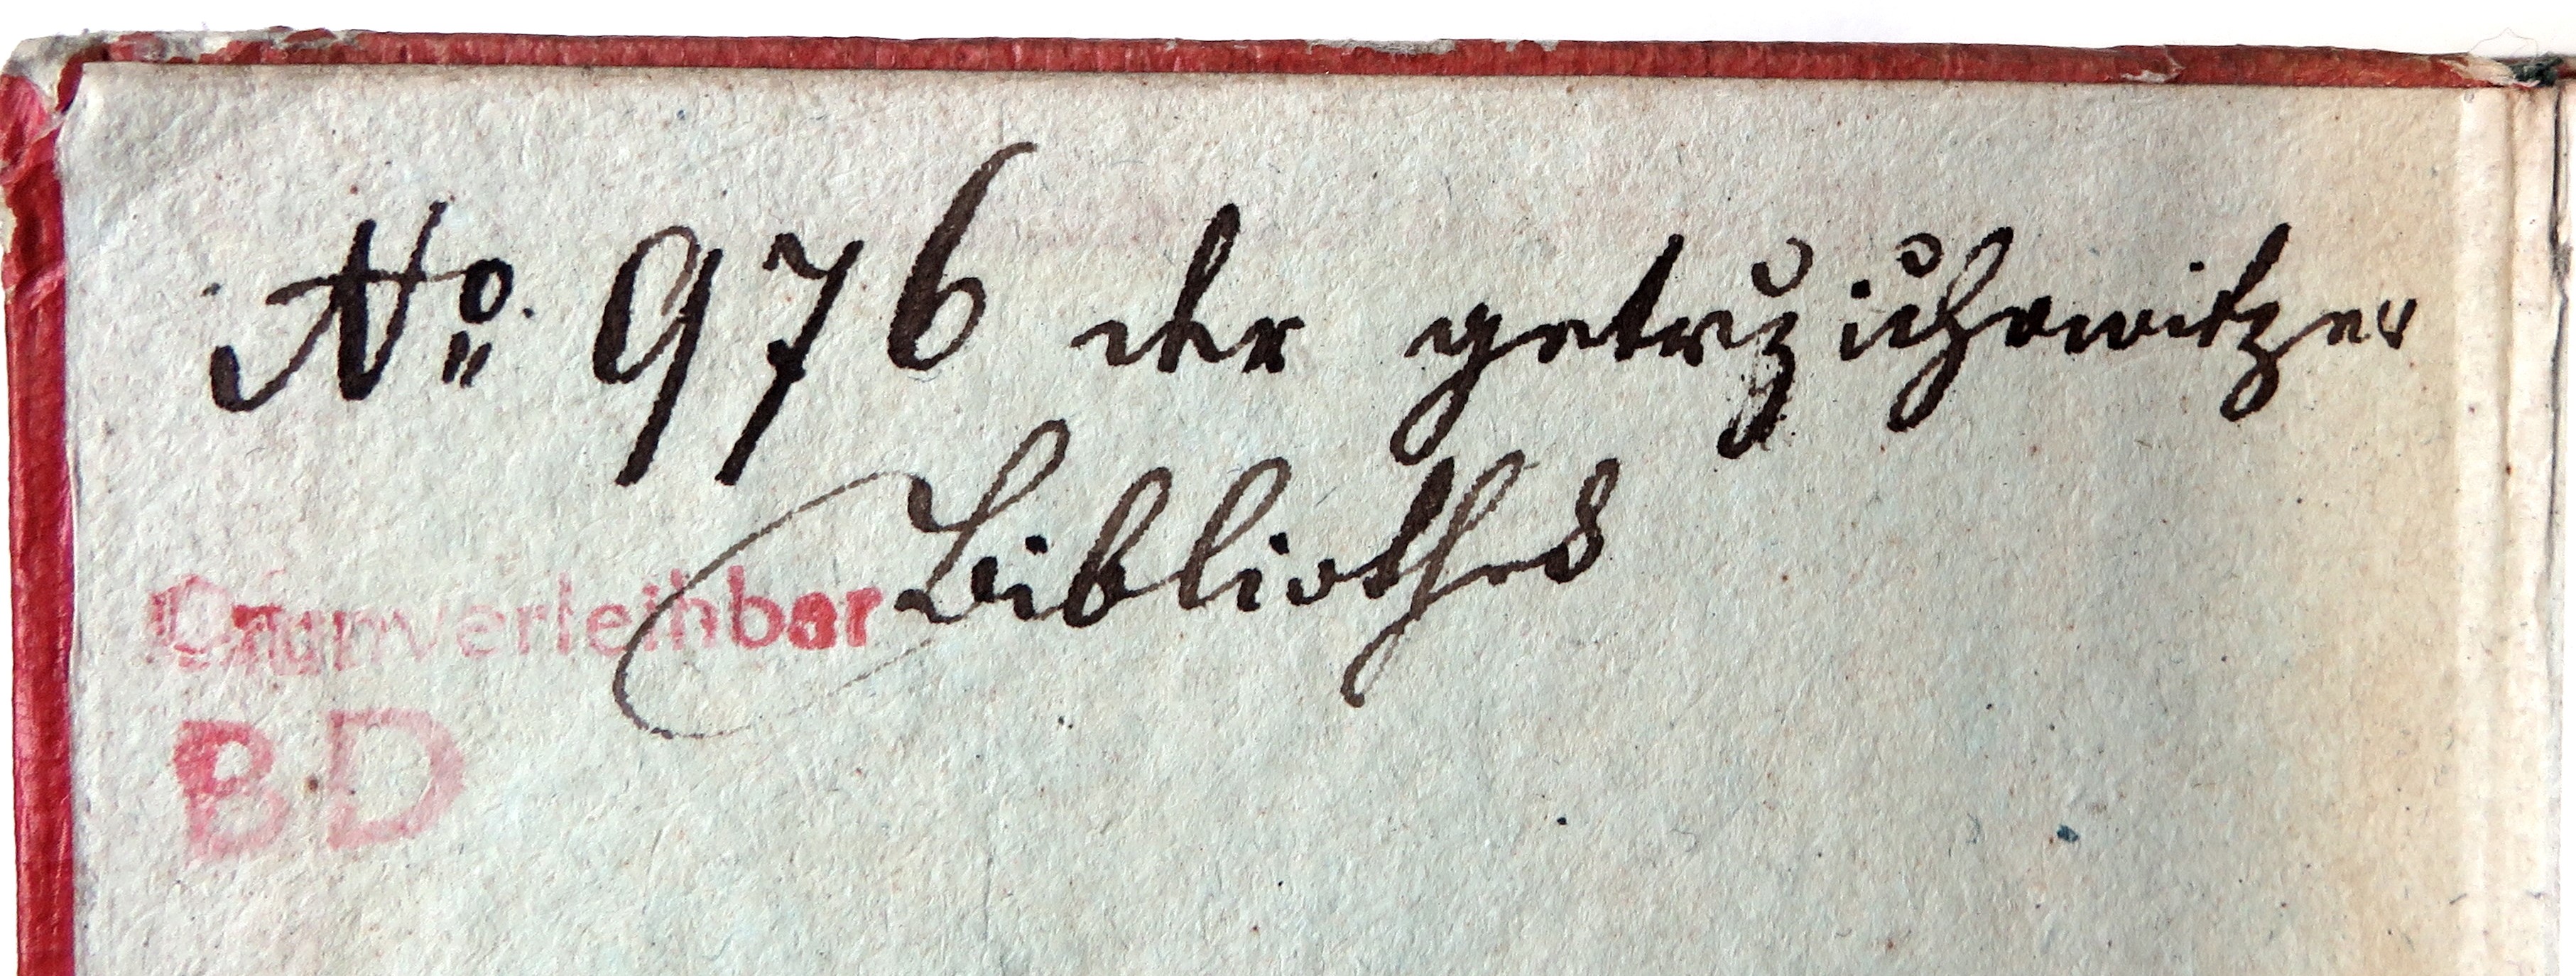 Signatur und schwer leserlicher Eintrag von unbekannt: "No. 976 […] […]ihowitz nu[?] Bibliothek"